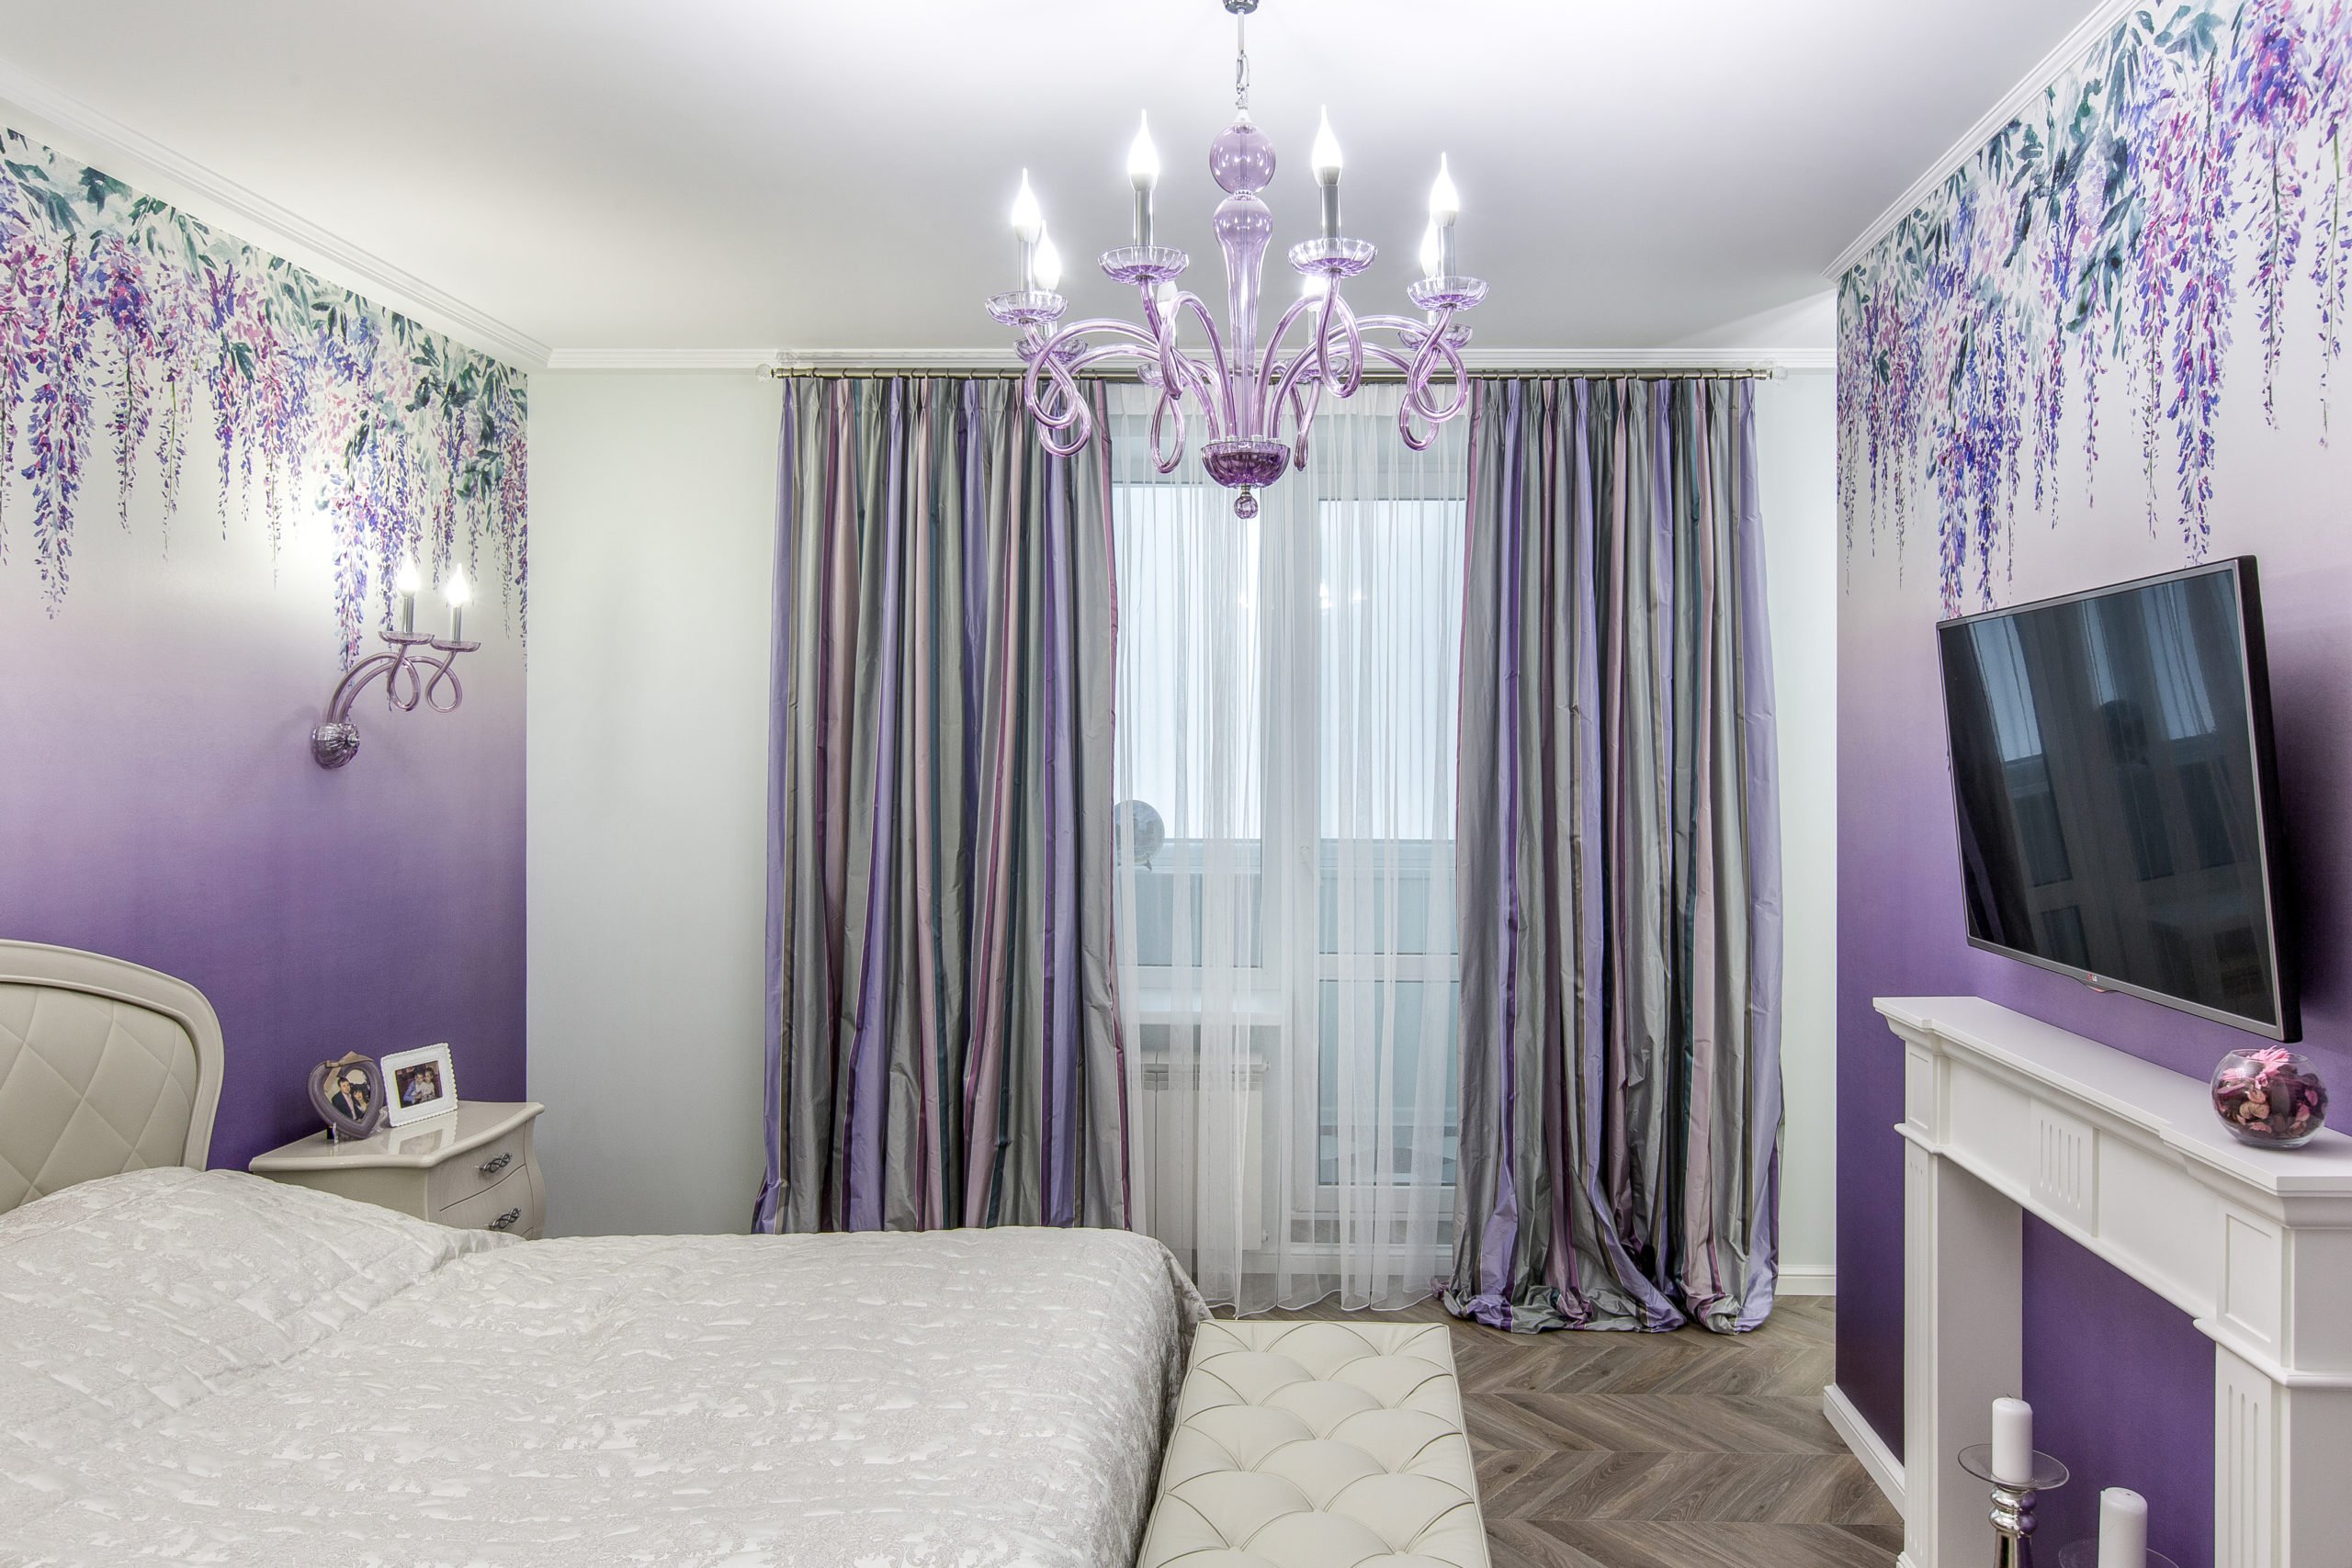 Сиреневая спальня 115 фото красивого оформления дизайна спальни в сиреневых тонах